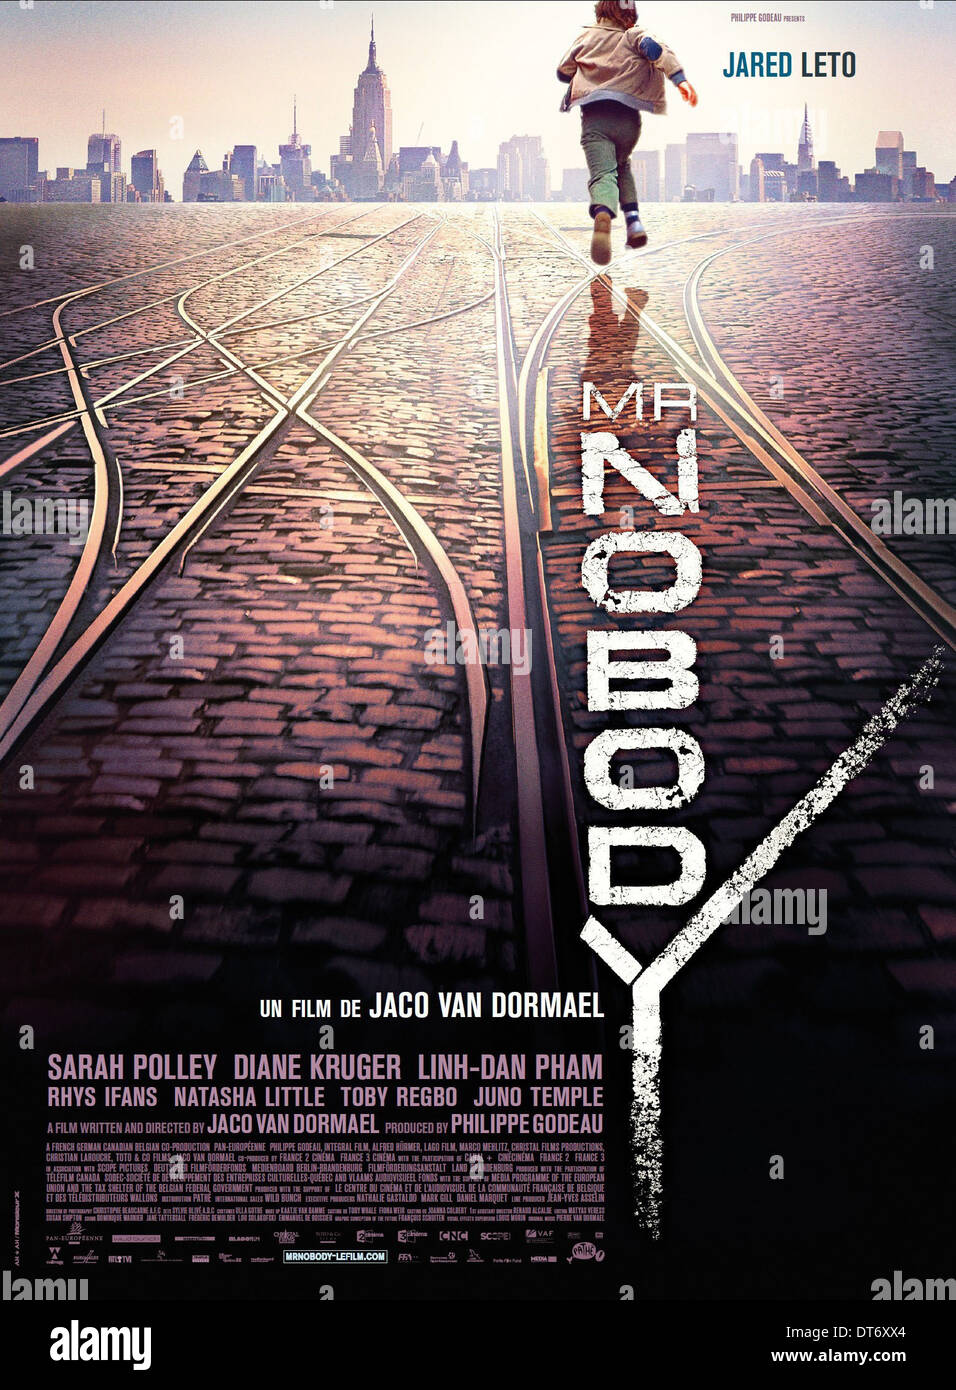 Movie nobody Nobody 2: